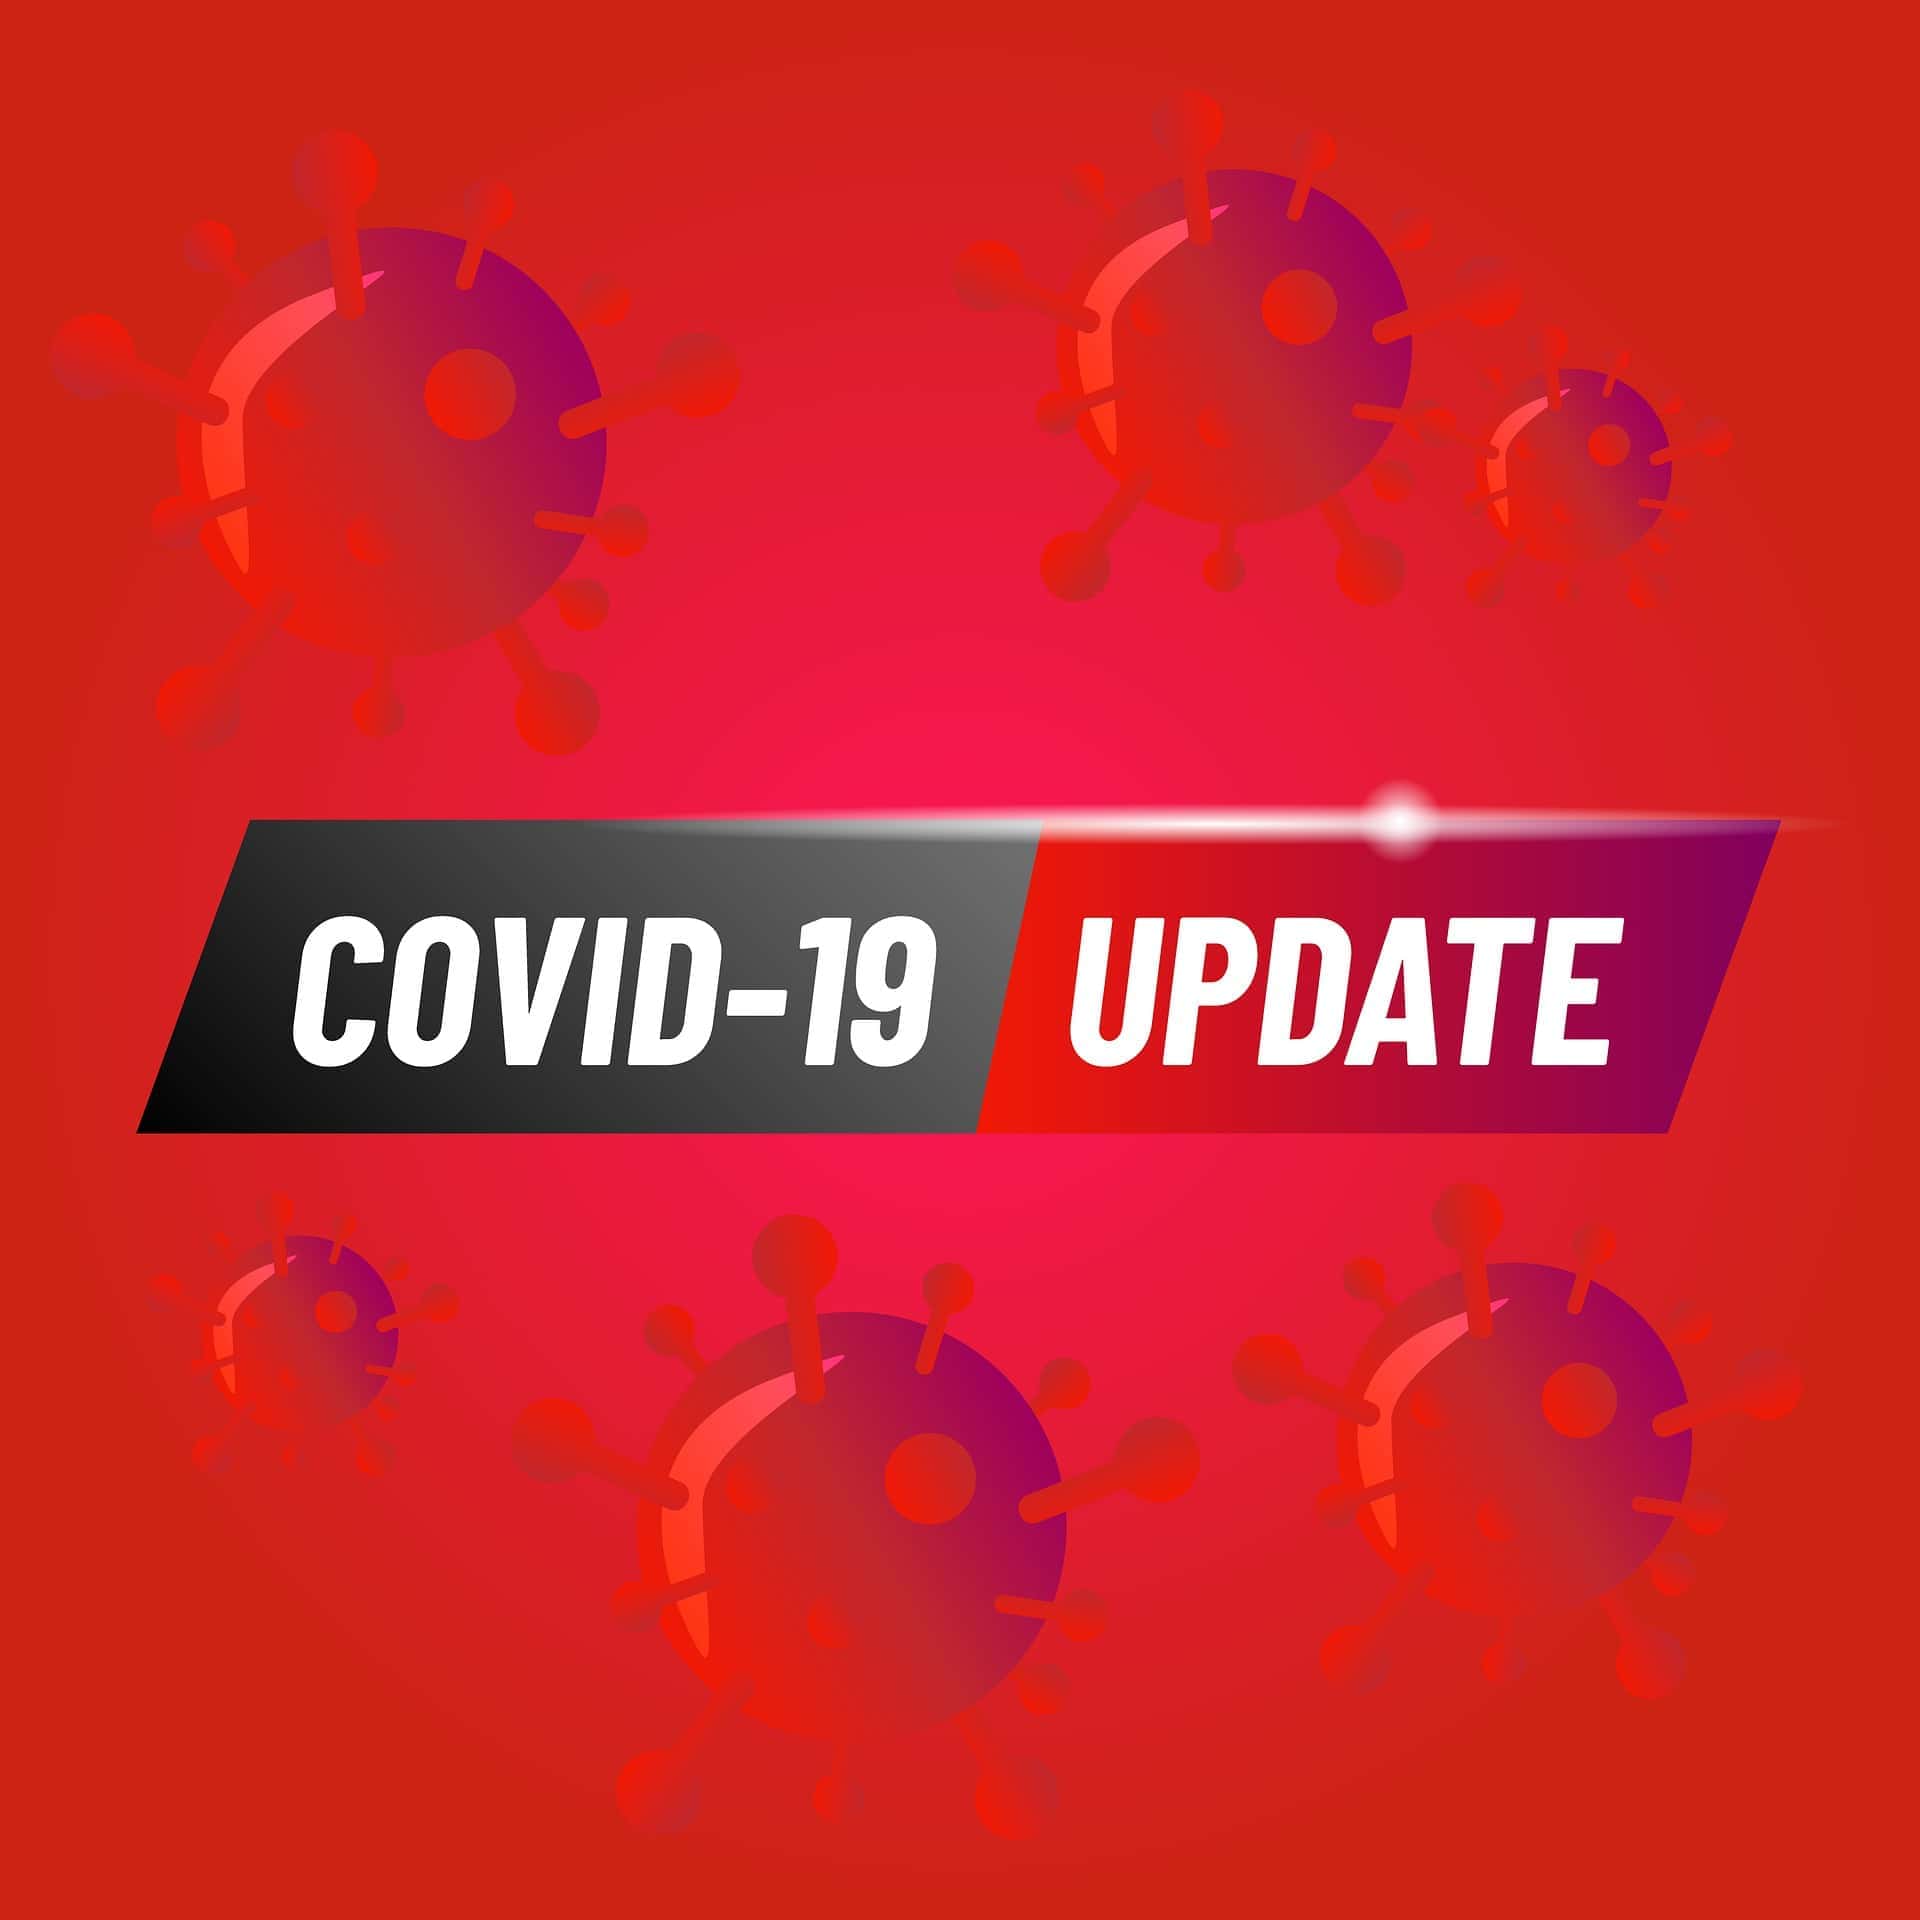 coronavirus-update-jpg-30